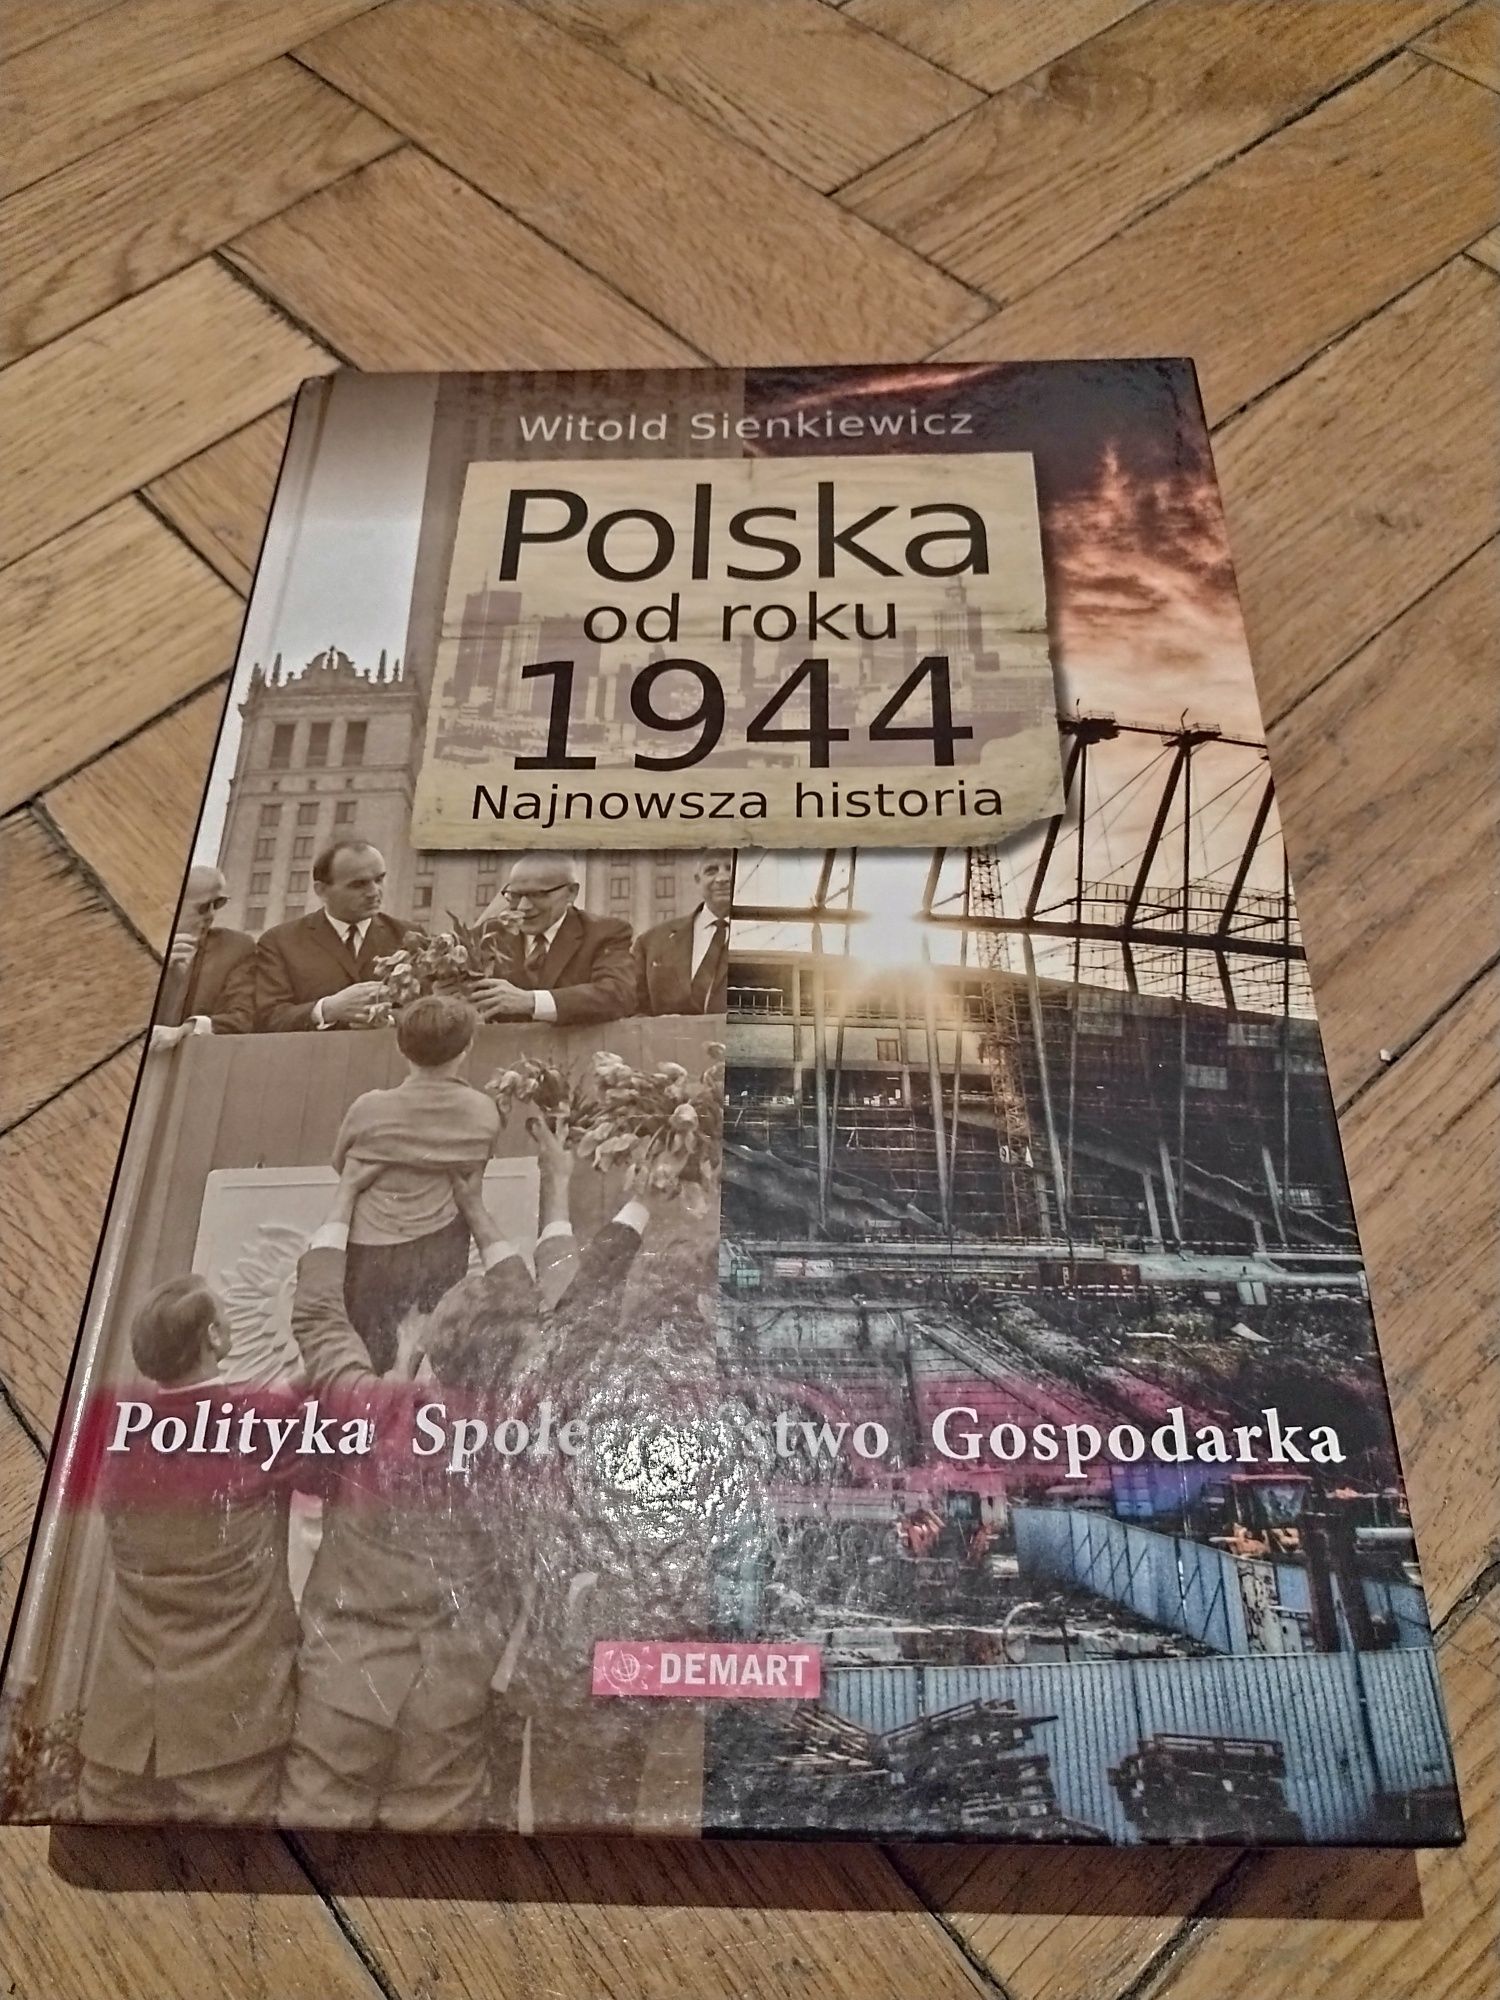 Witold Sienkiewicz, Polska od roku 1944. Najnowsza historia